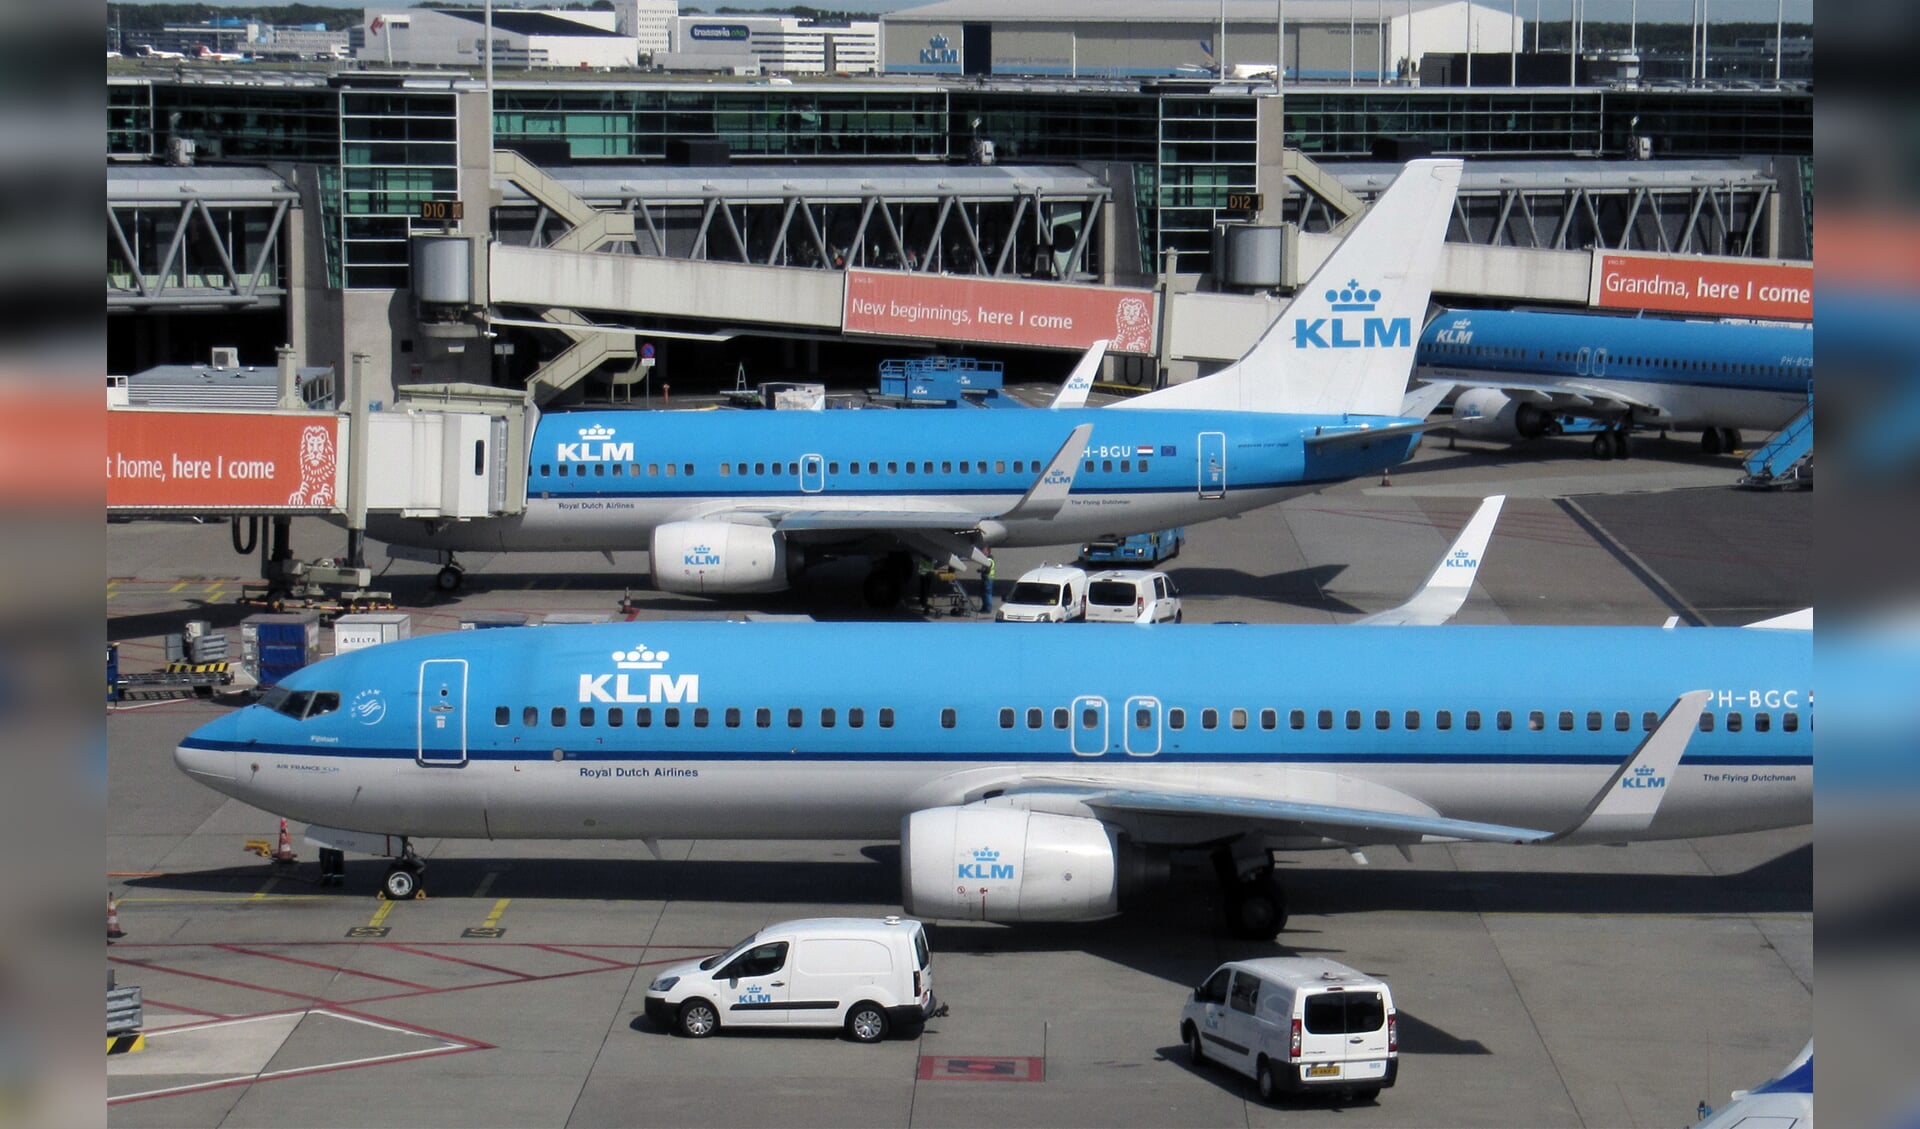 Afhandeling van KLM vliegtuigen op Schiphol.